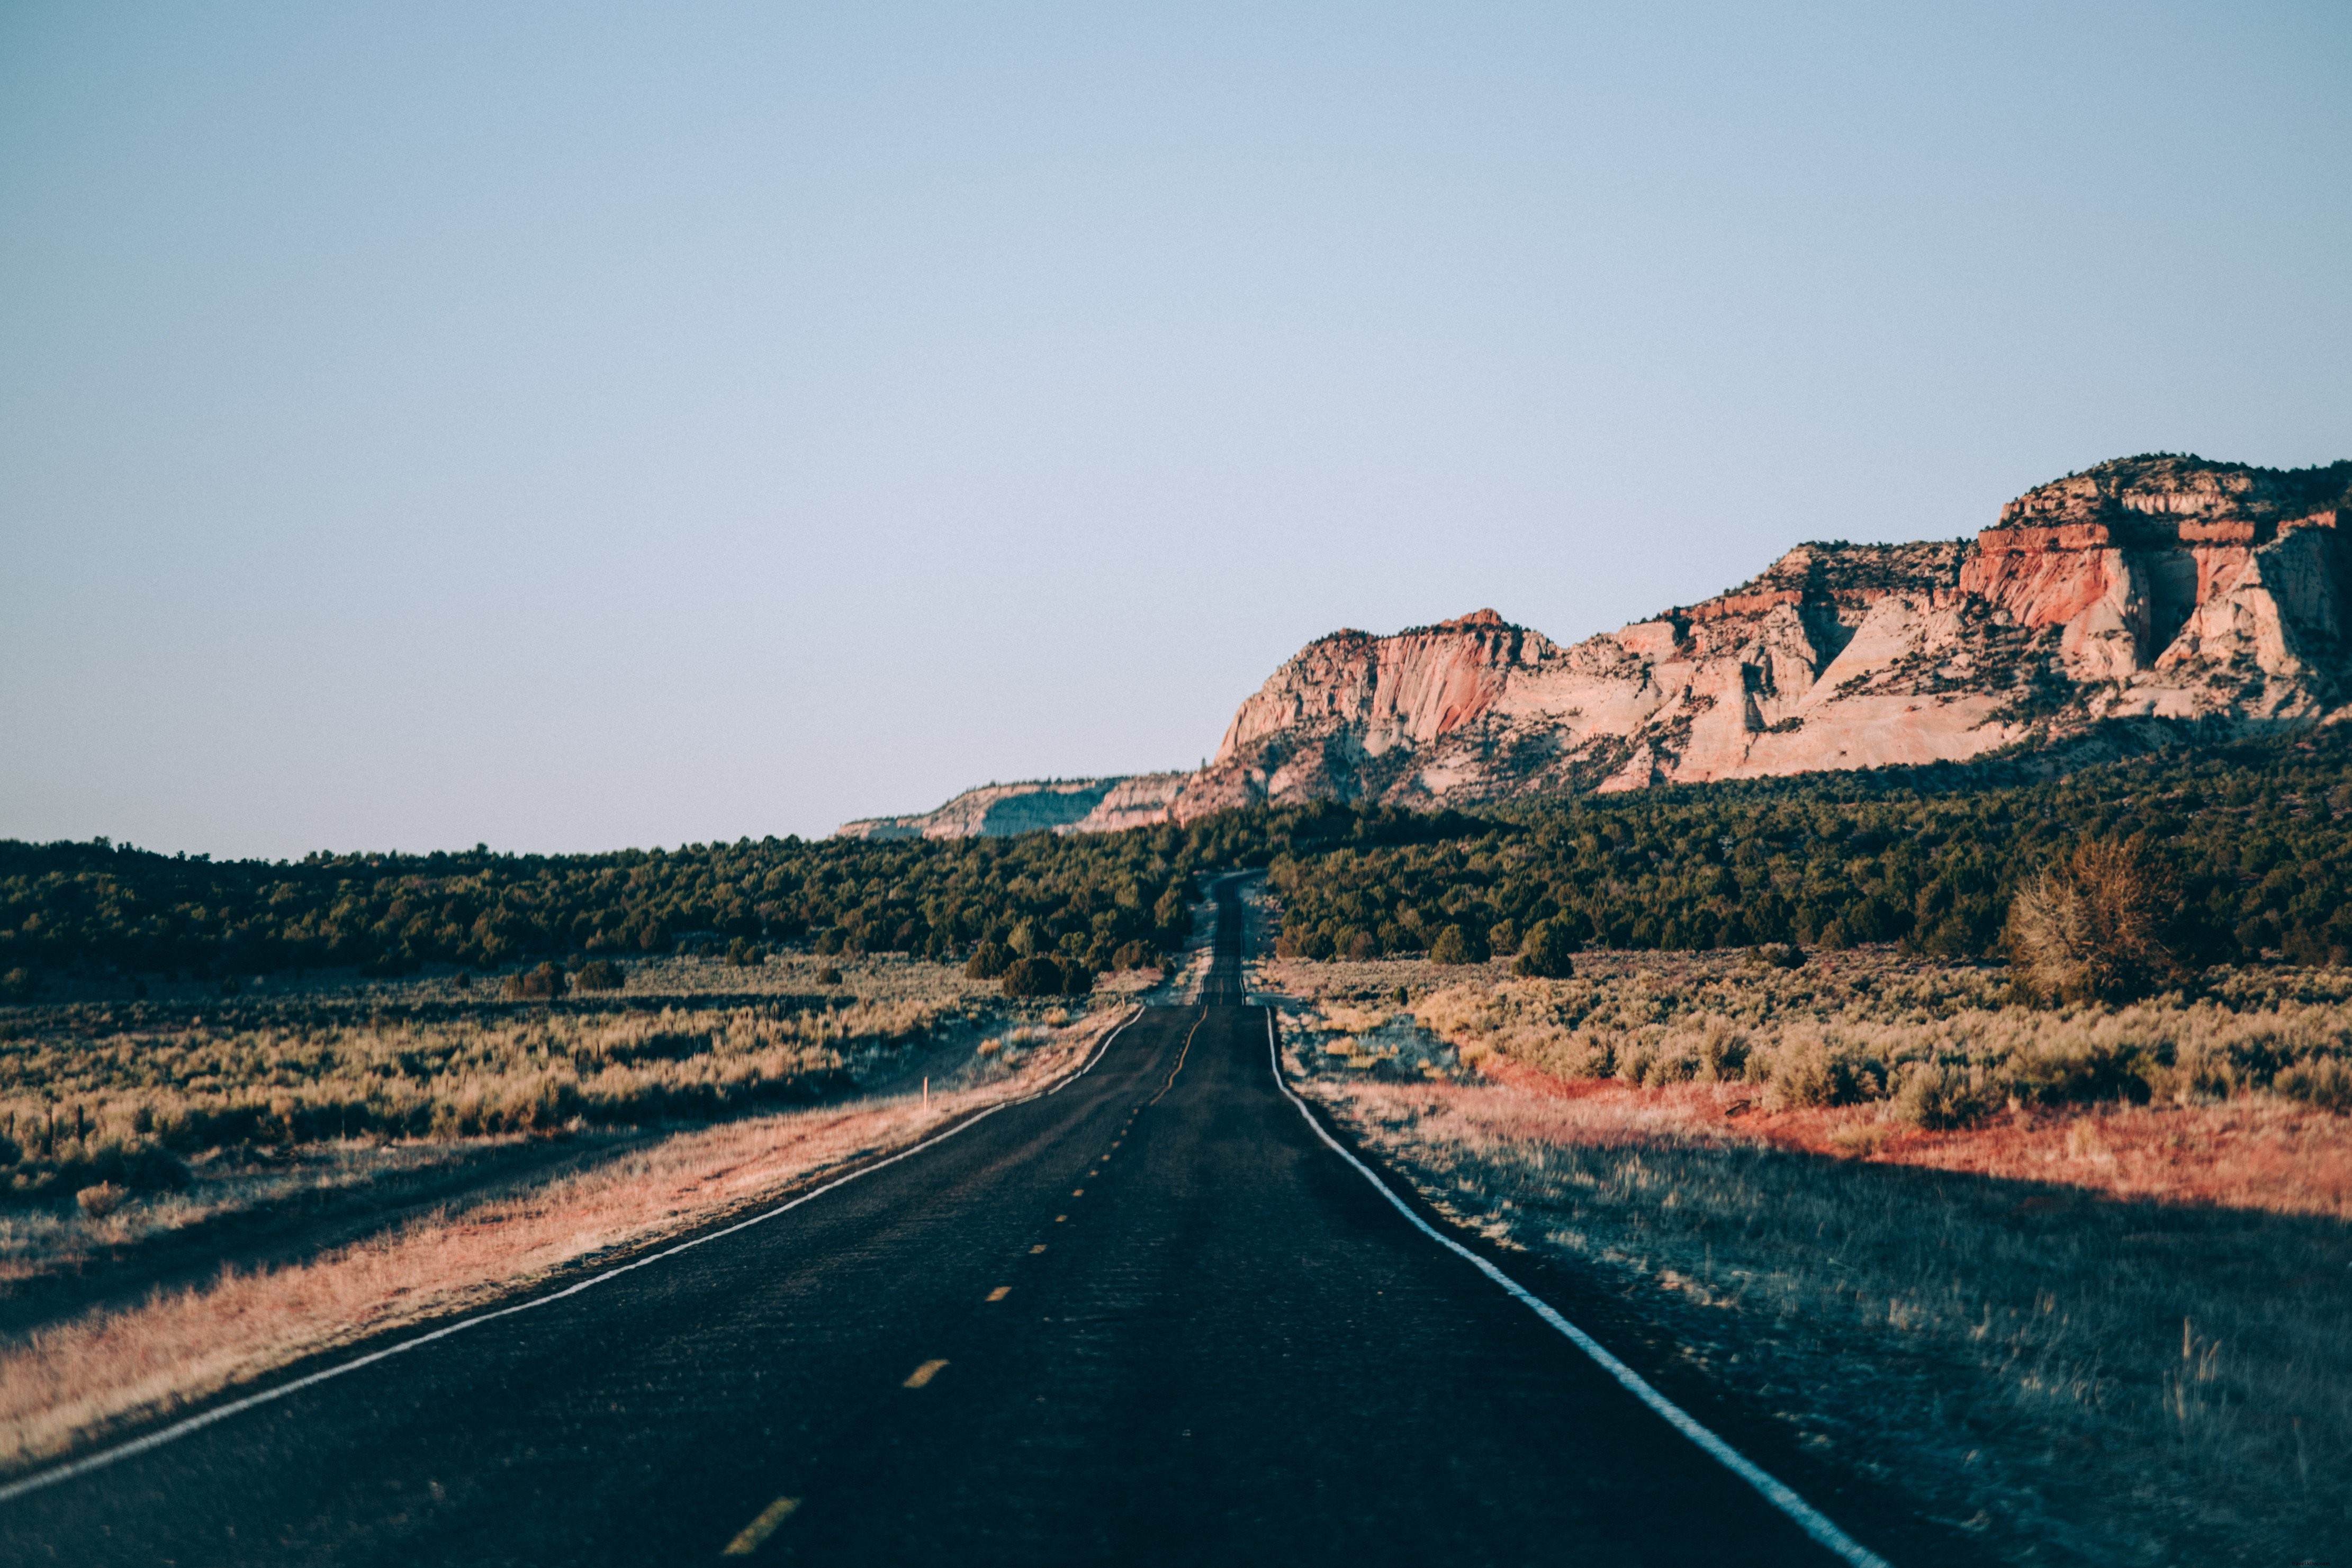 アメリカの砂漠の高速道路の写真